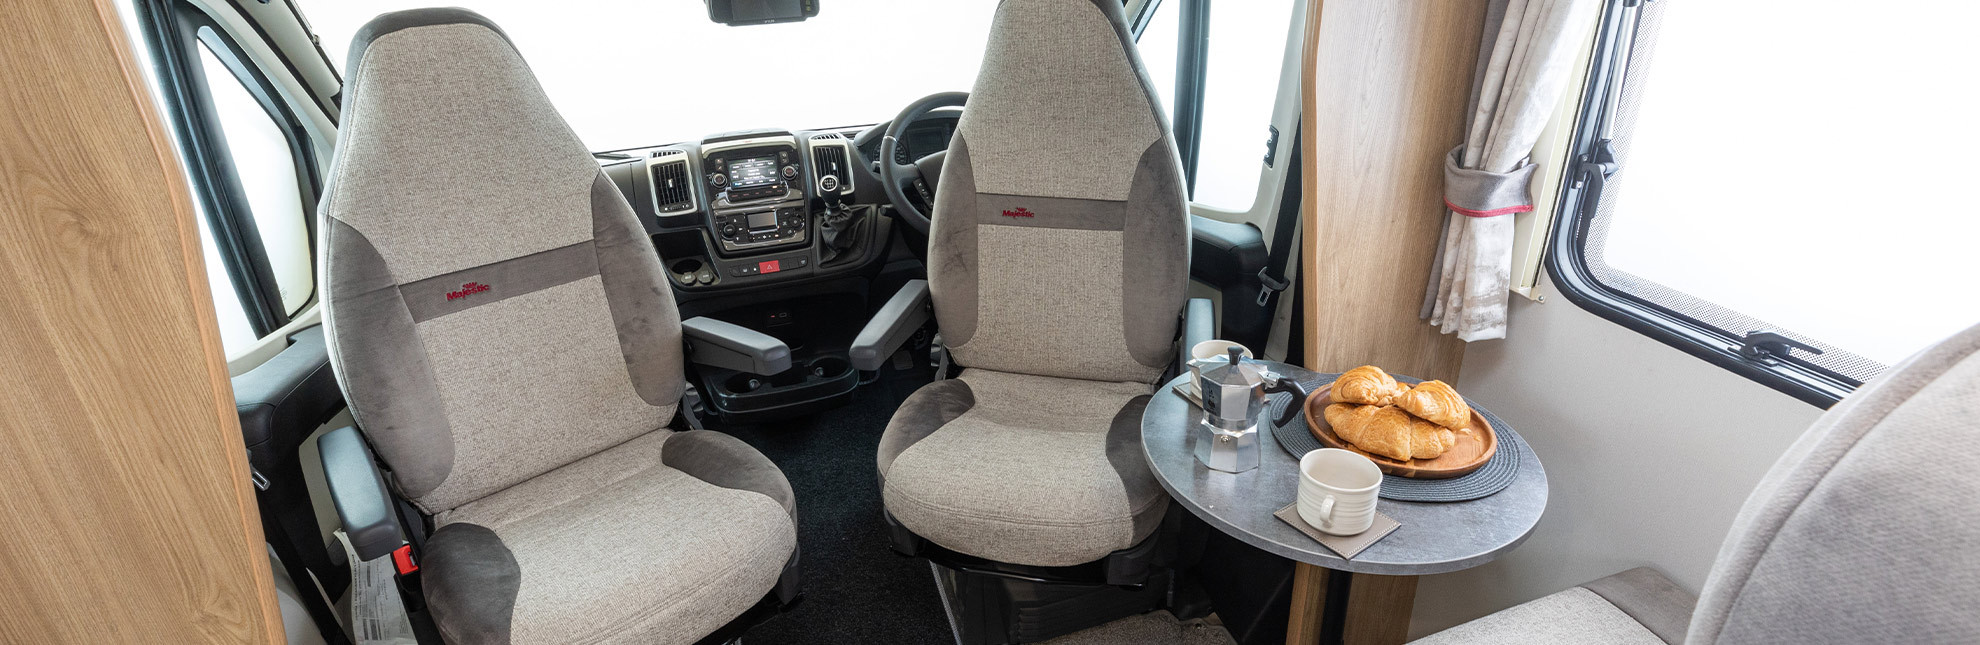 Elddis-Majestic-compact-coachbuilt-header-1980x645